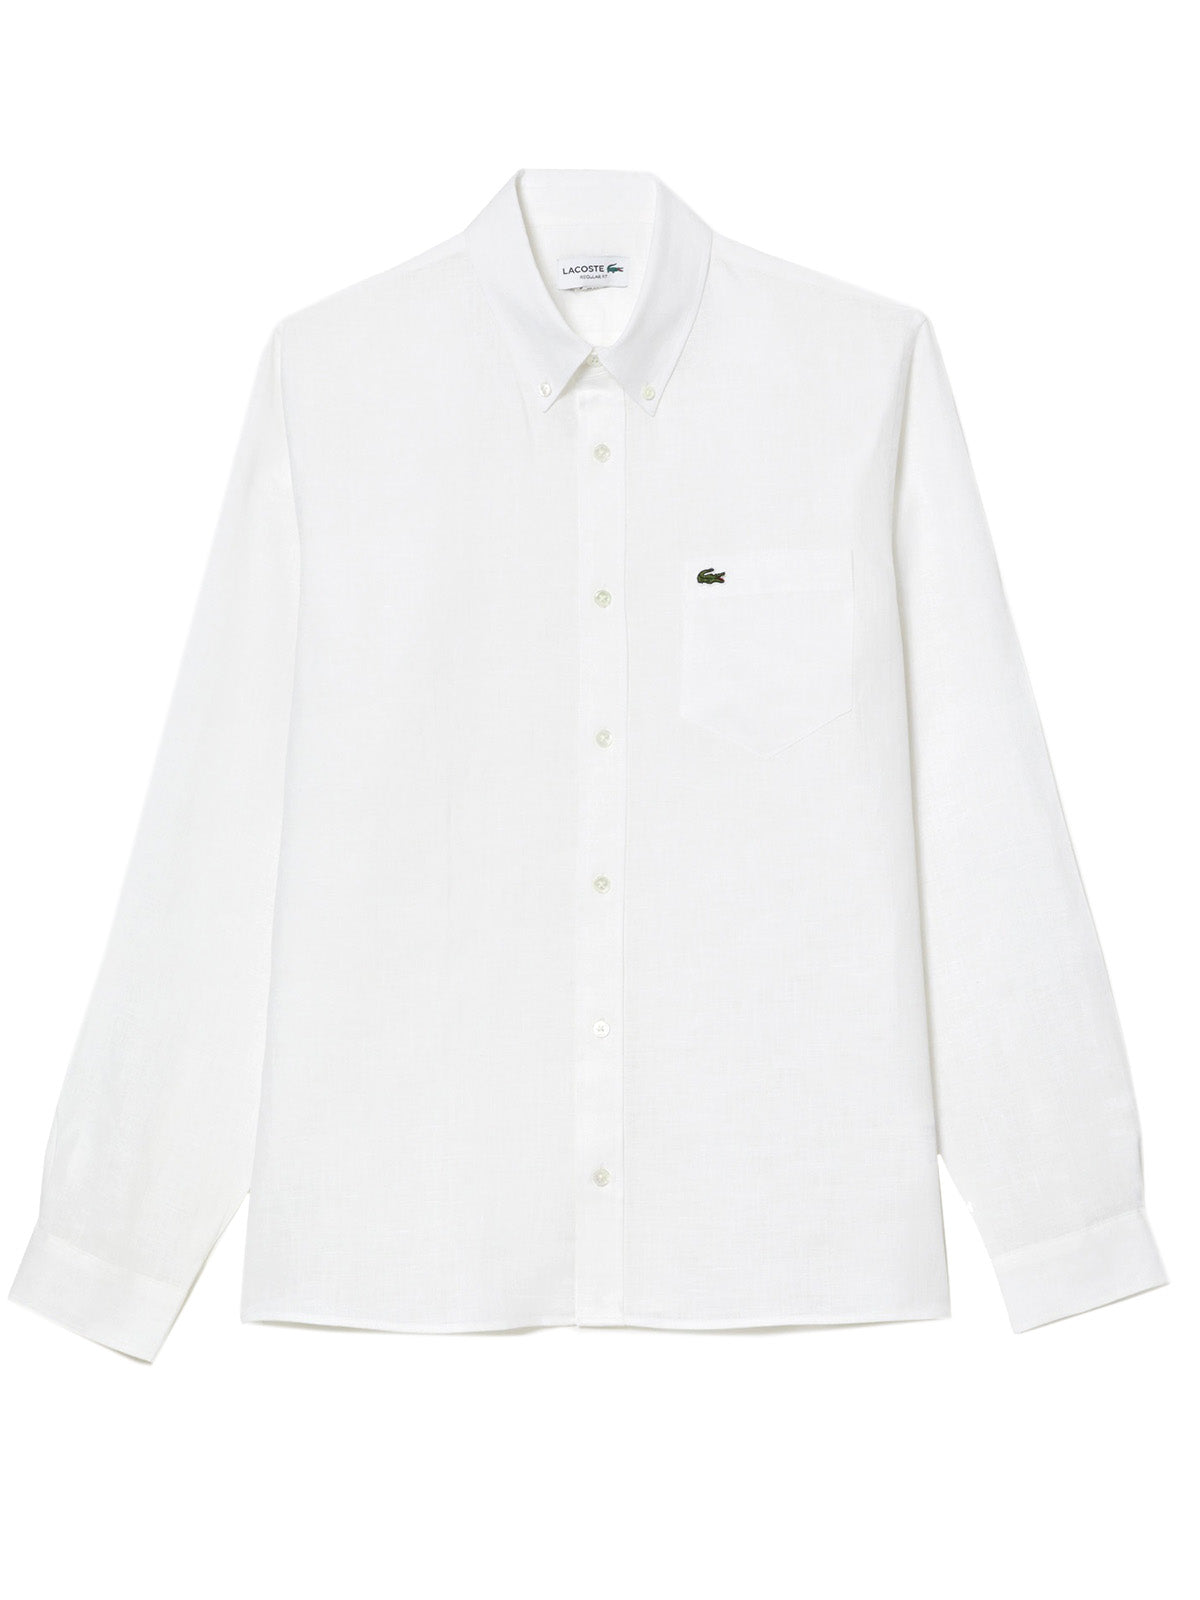 Camicie casual Uomo Lacoste - Camicia Da Uomo Di Lino Lacoste Regular Fit - Bianco